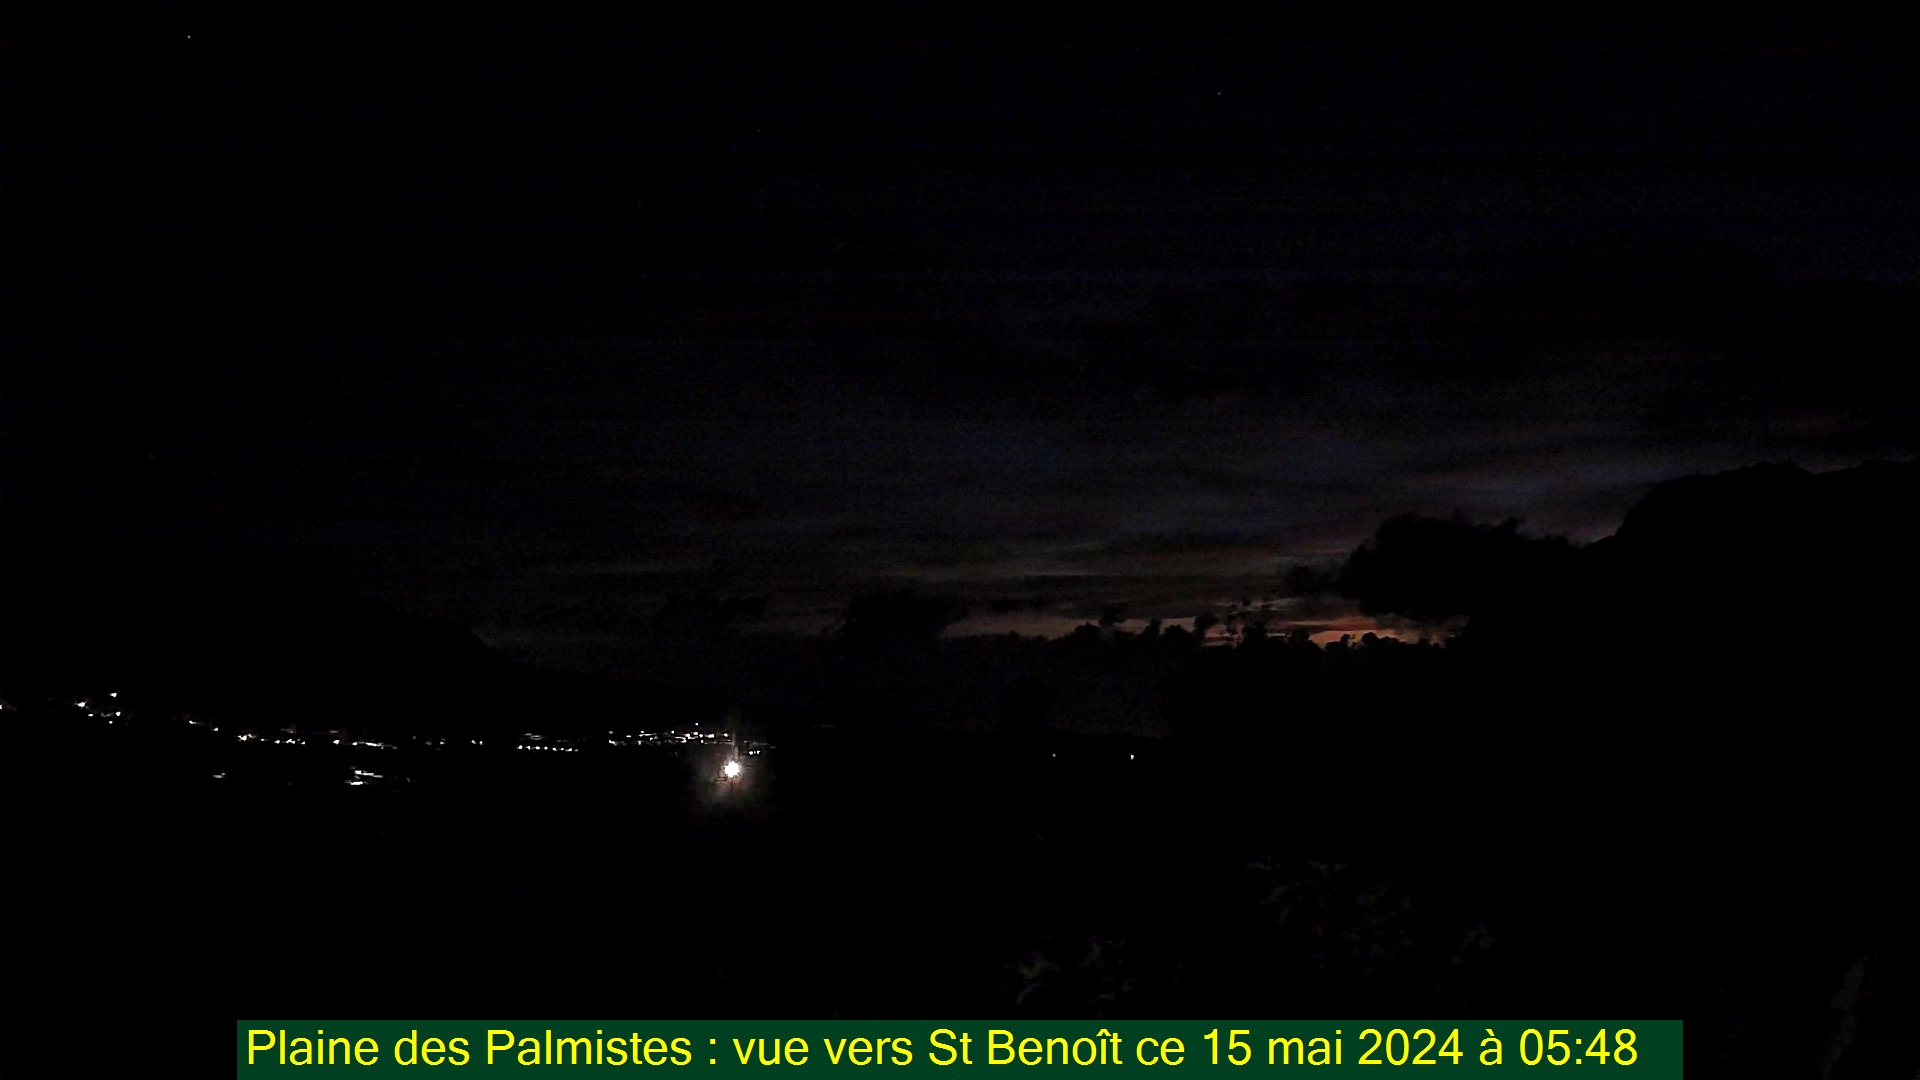 Saint-Denis (Réunion) Søn. 05:50